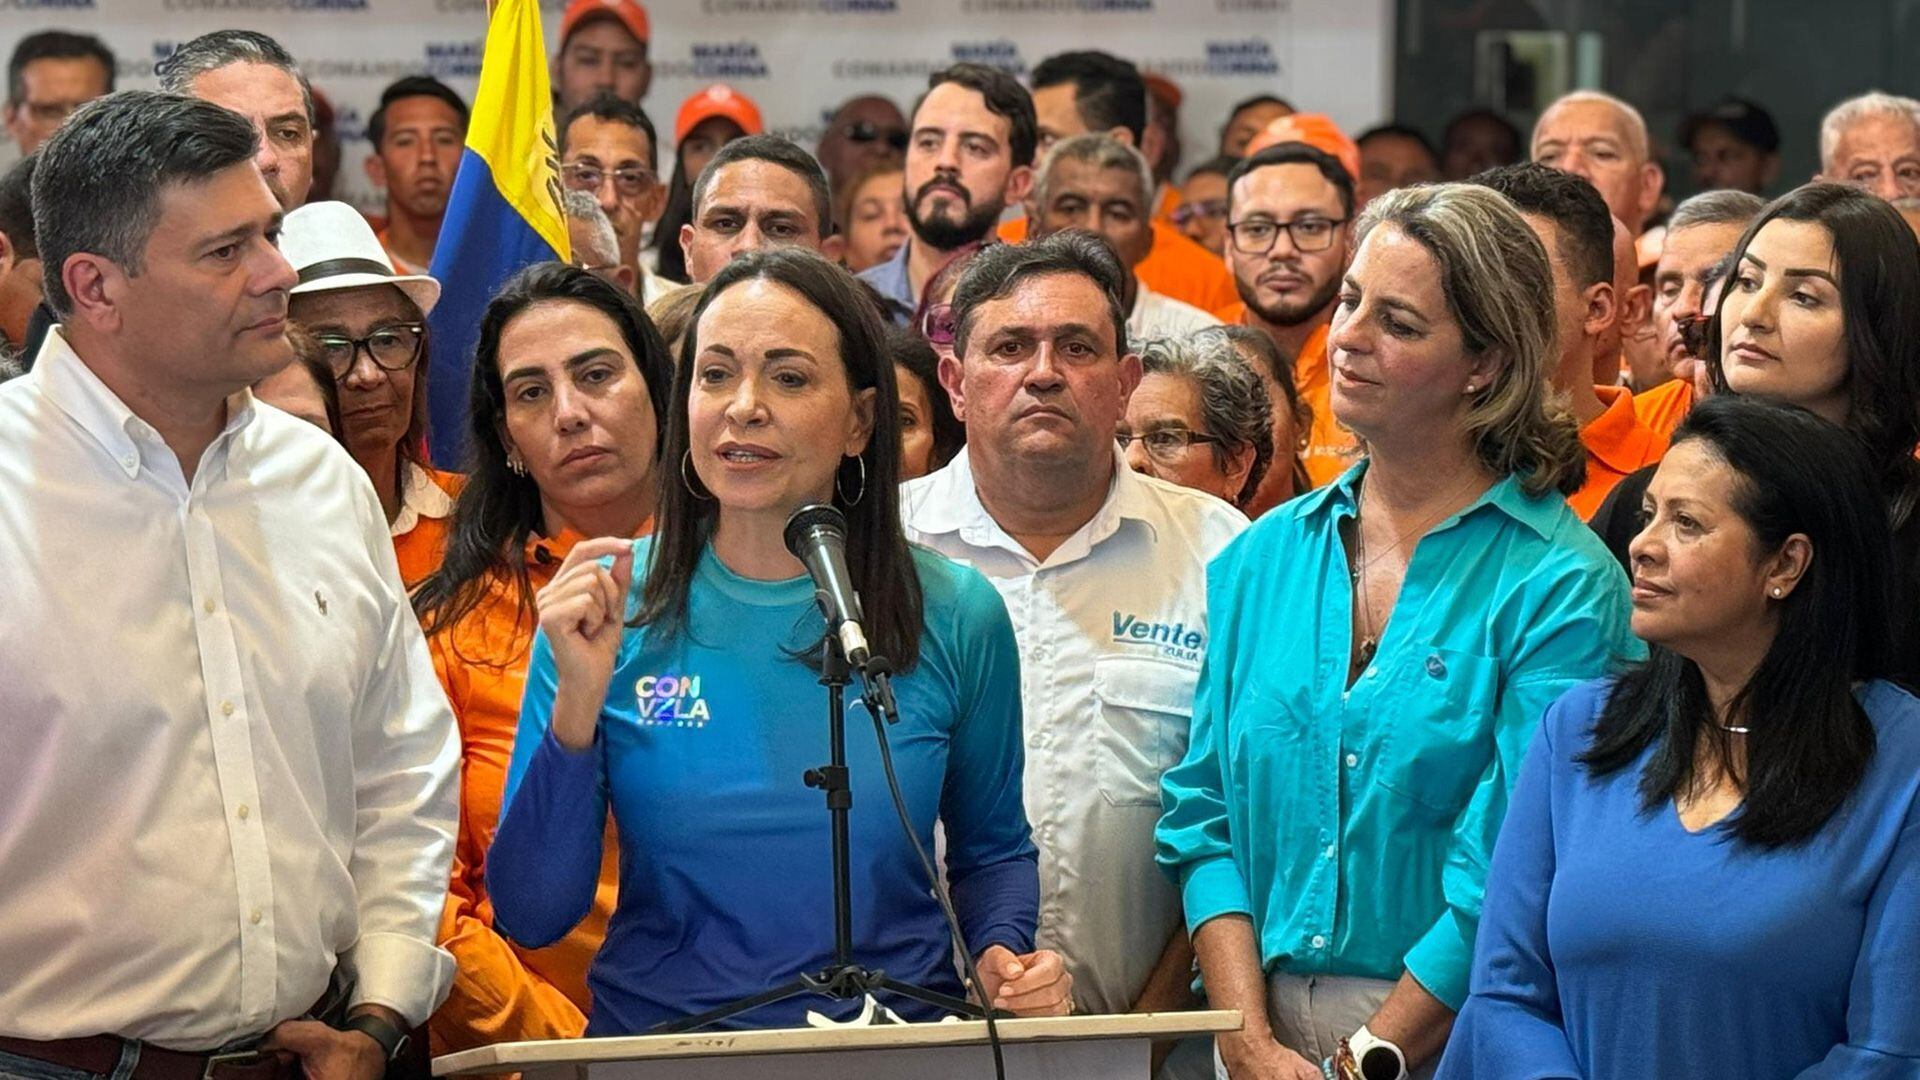 María Corina Machado agradeció el gesto del ahora ex aspirante y de su partido (Vente Venezuela)